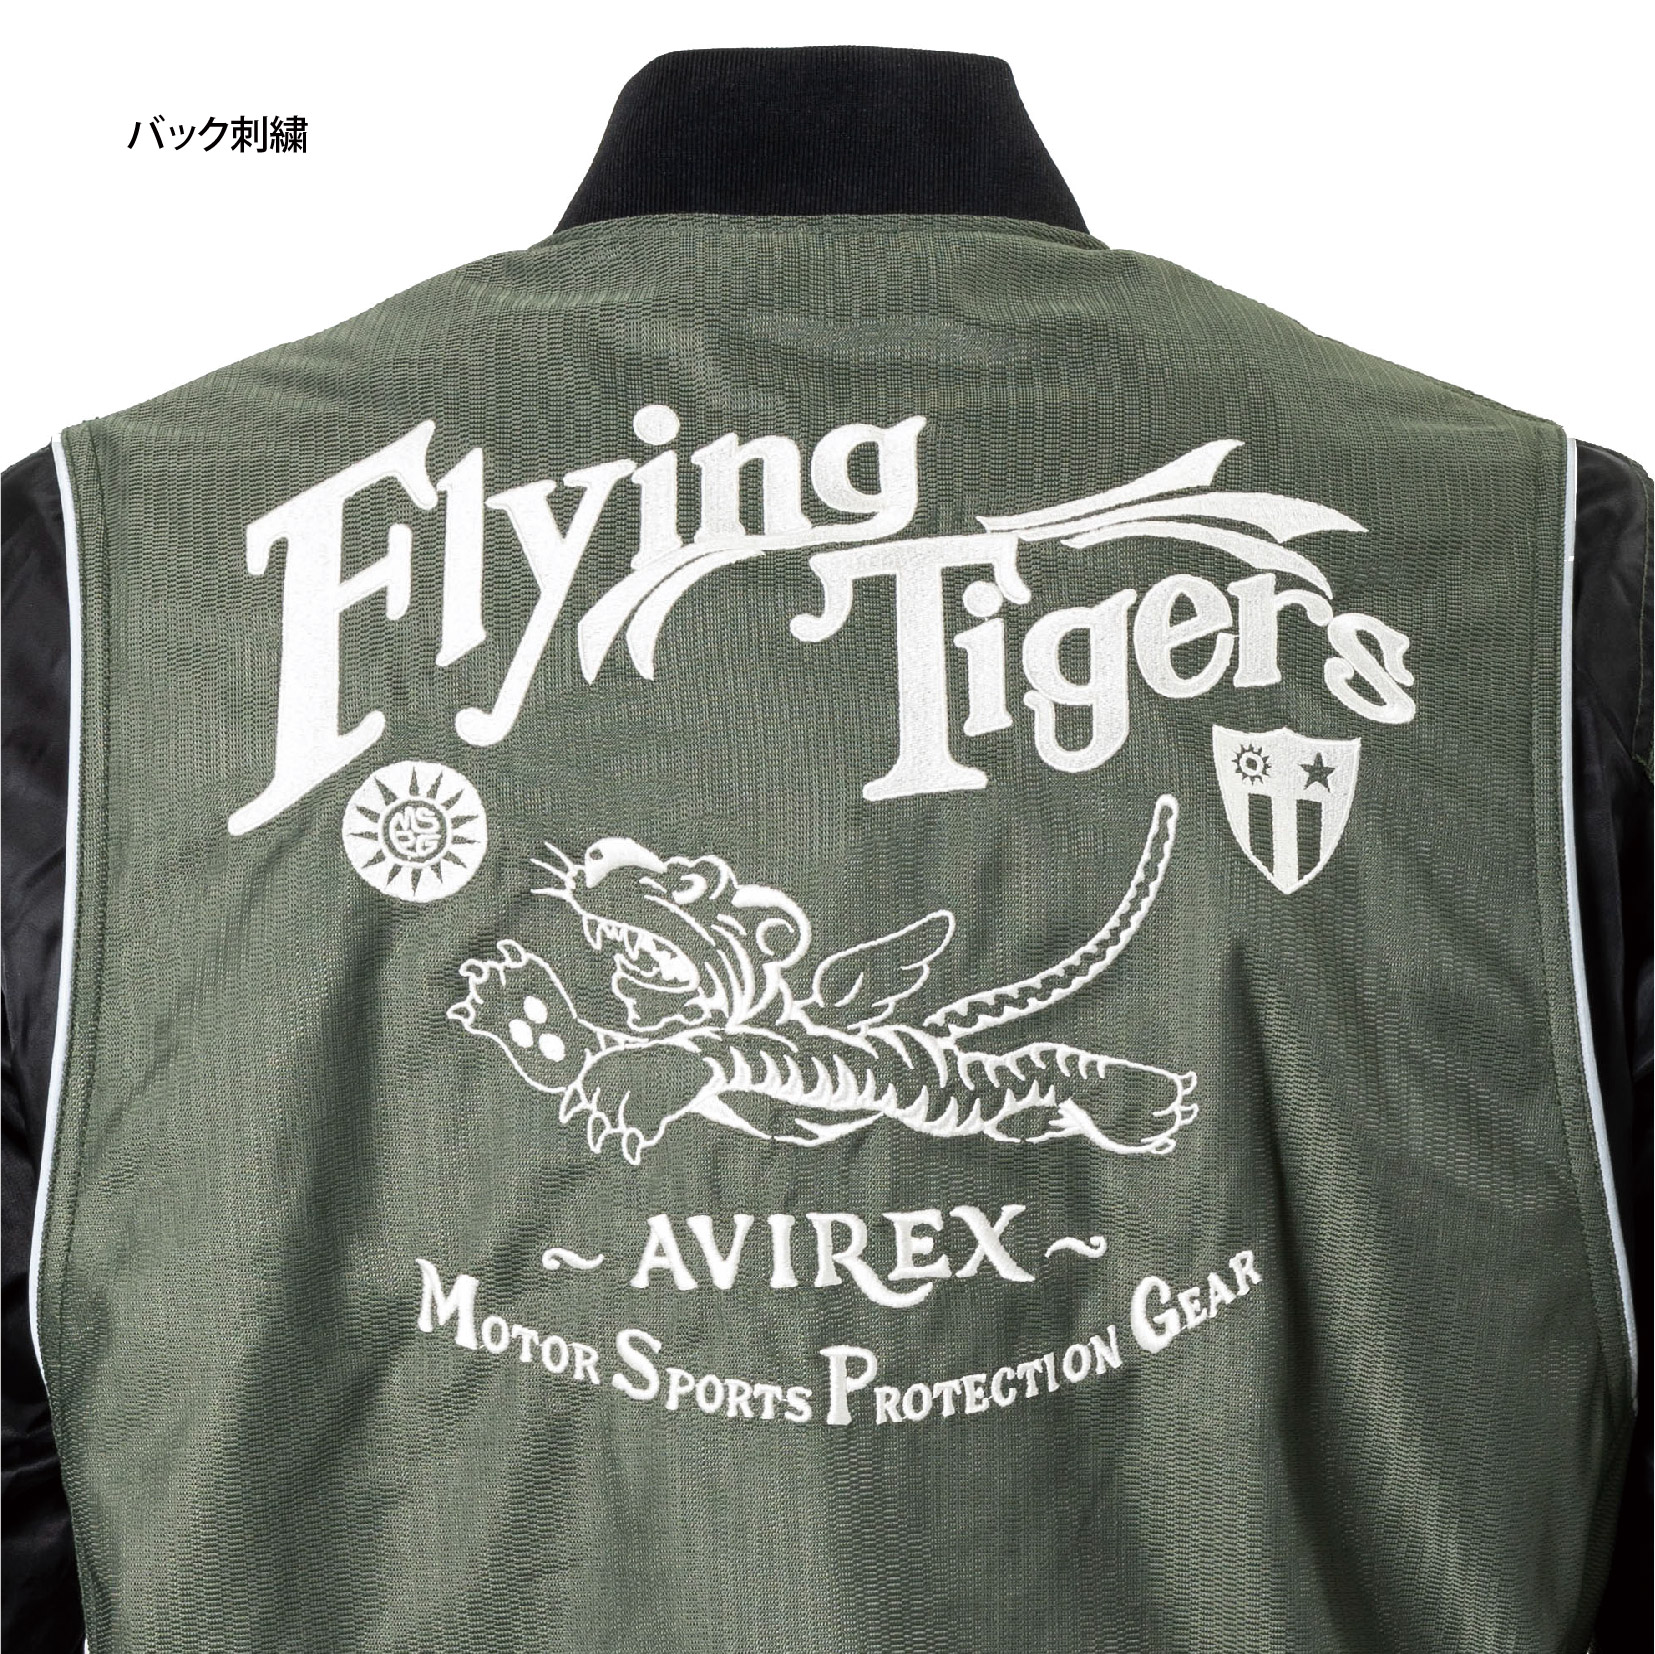 割引価格の商品 【ハイド様専用】AVIREX Flying Tiger トラック 